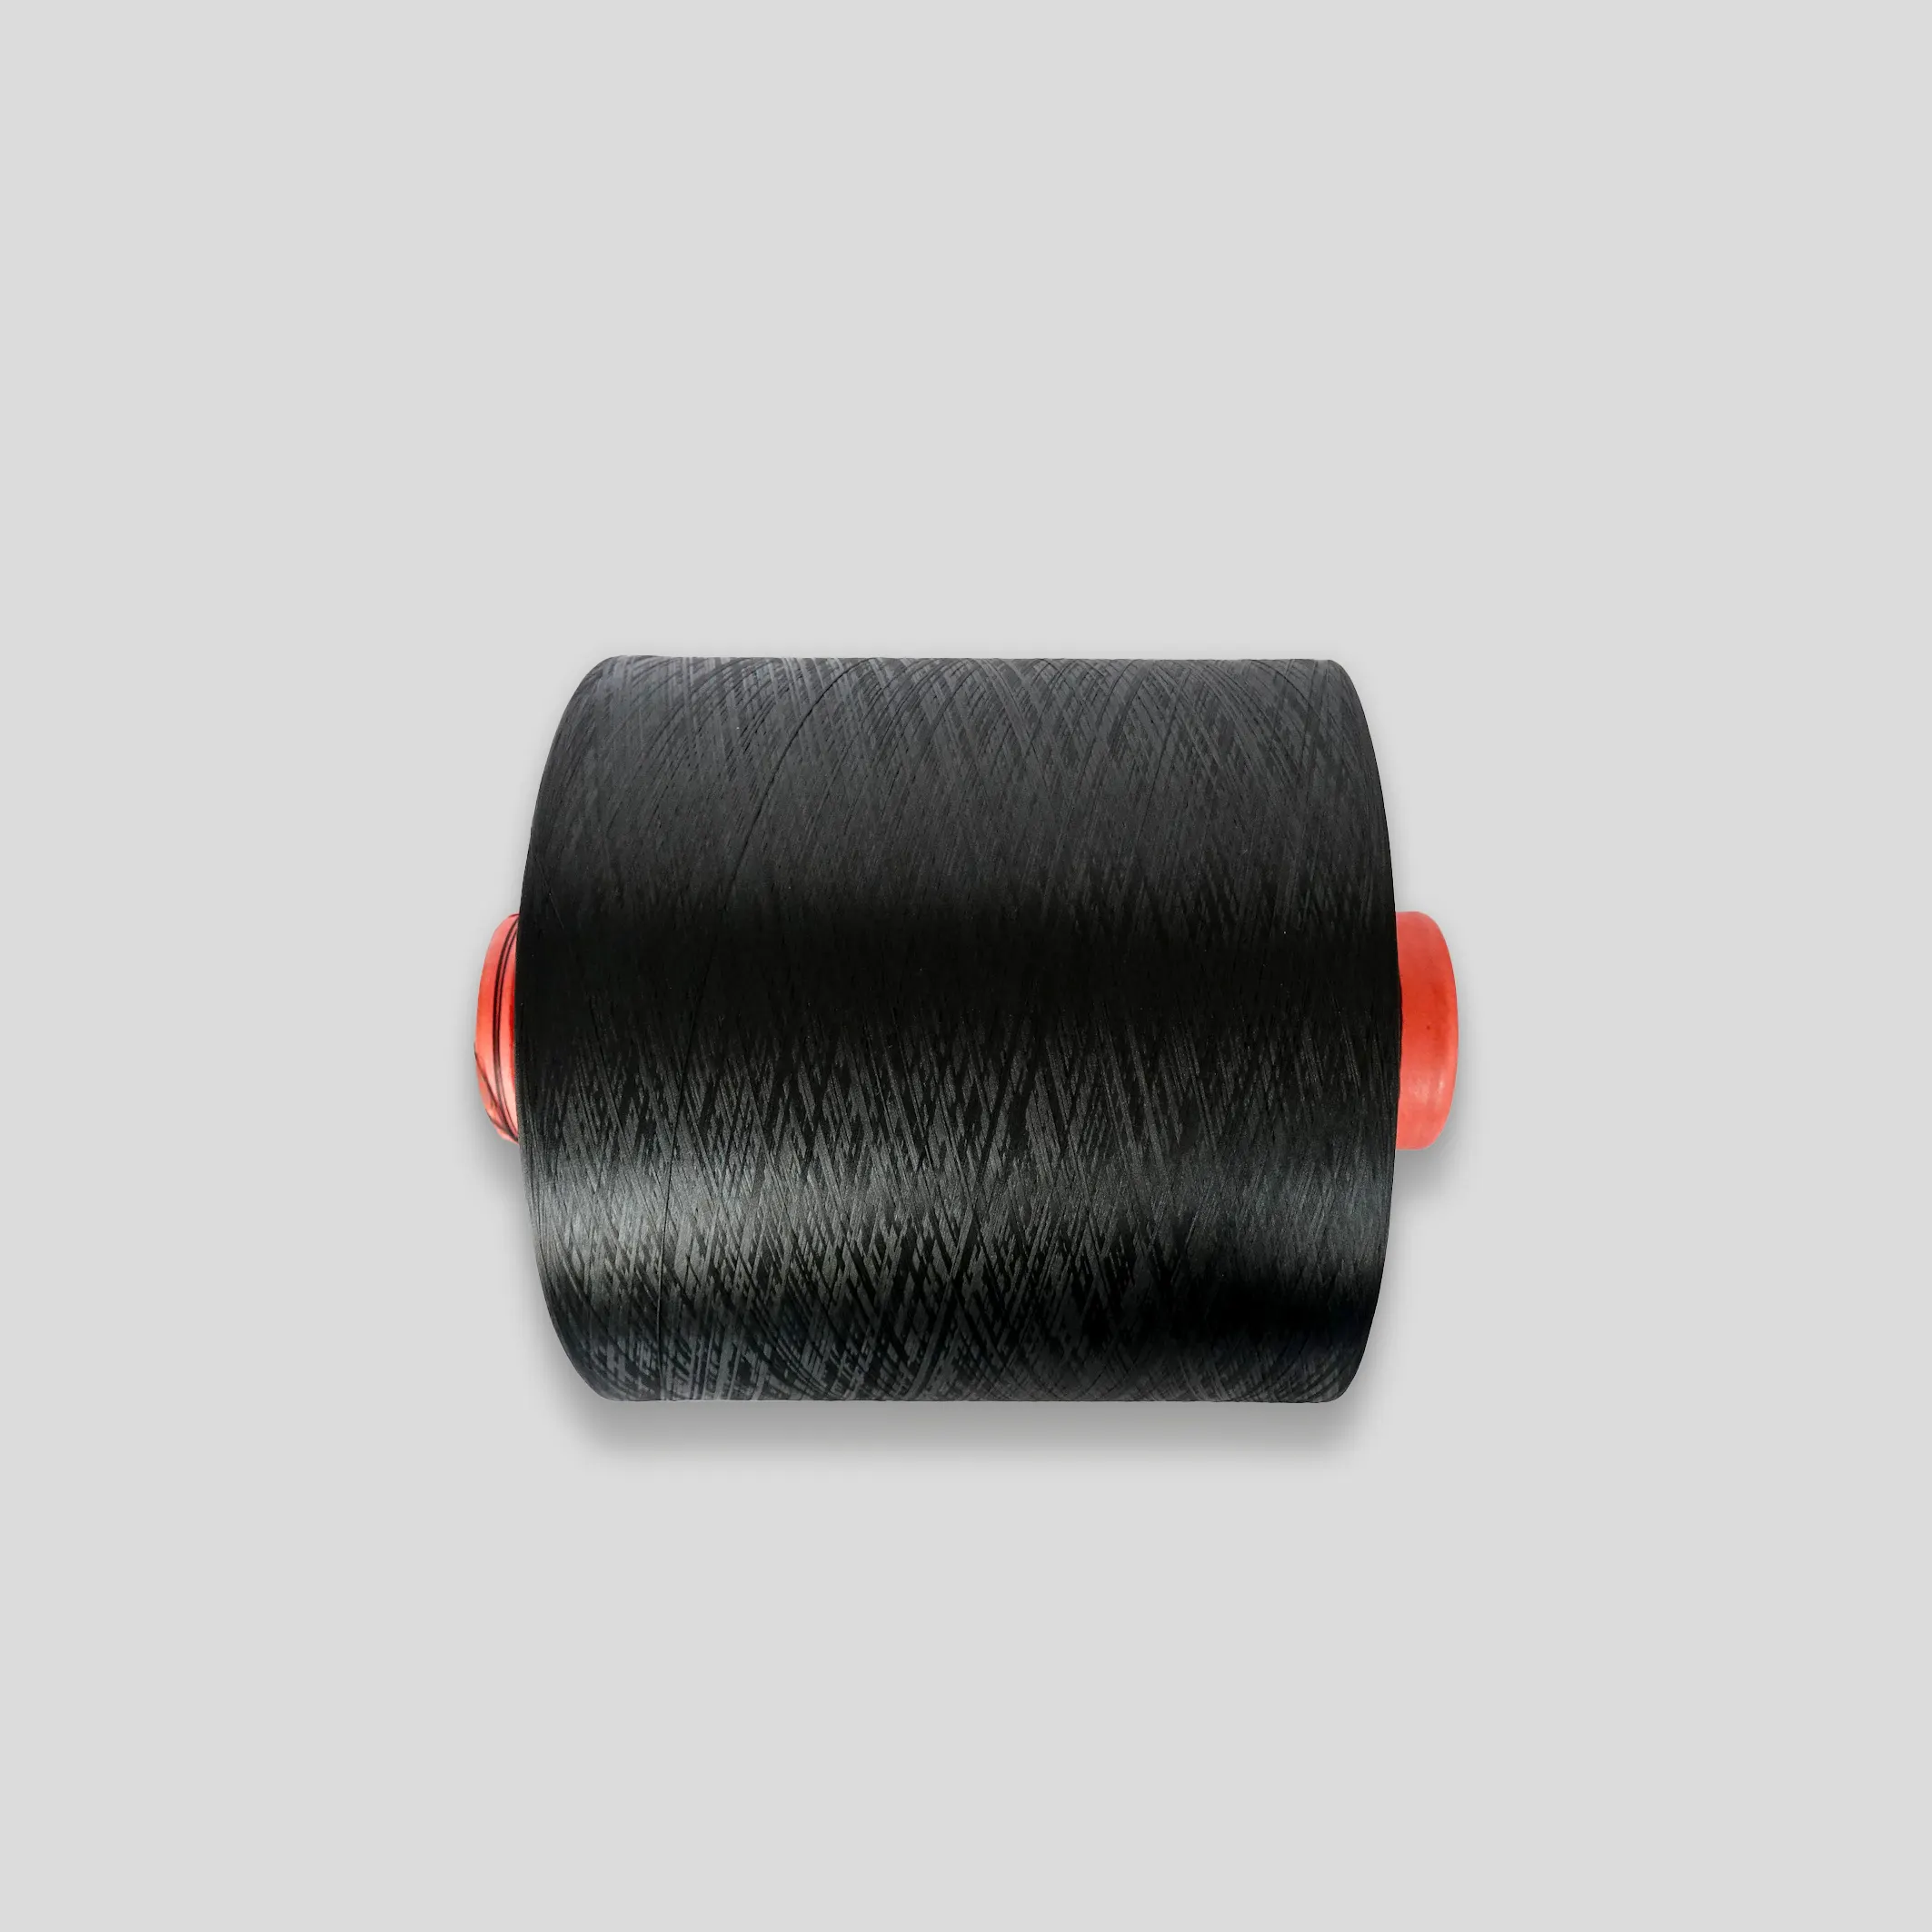 Hilo de poliéster 75D/36F negro crudo con buen filamento estampado de tinte de crimpado para tejer y tejer material reciclado circular